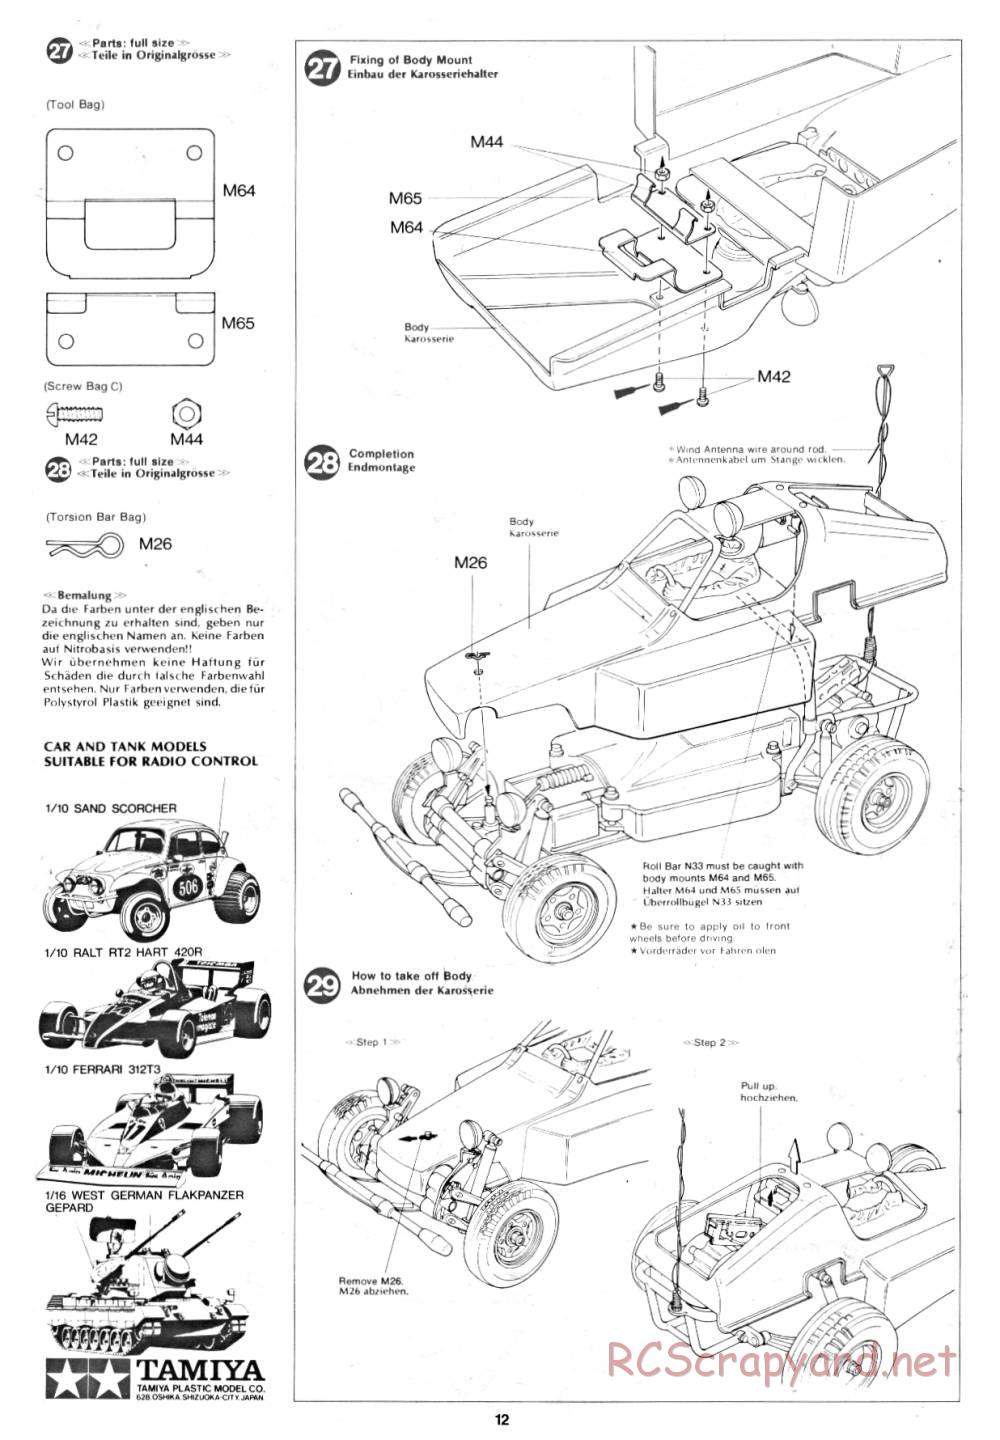 Tamiya - Rough Rider - 58015 - Manual - Page 12